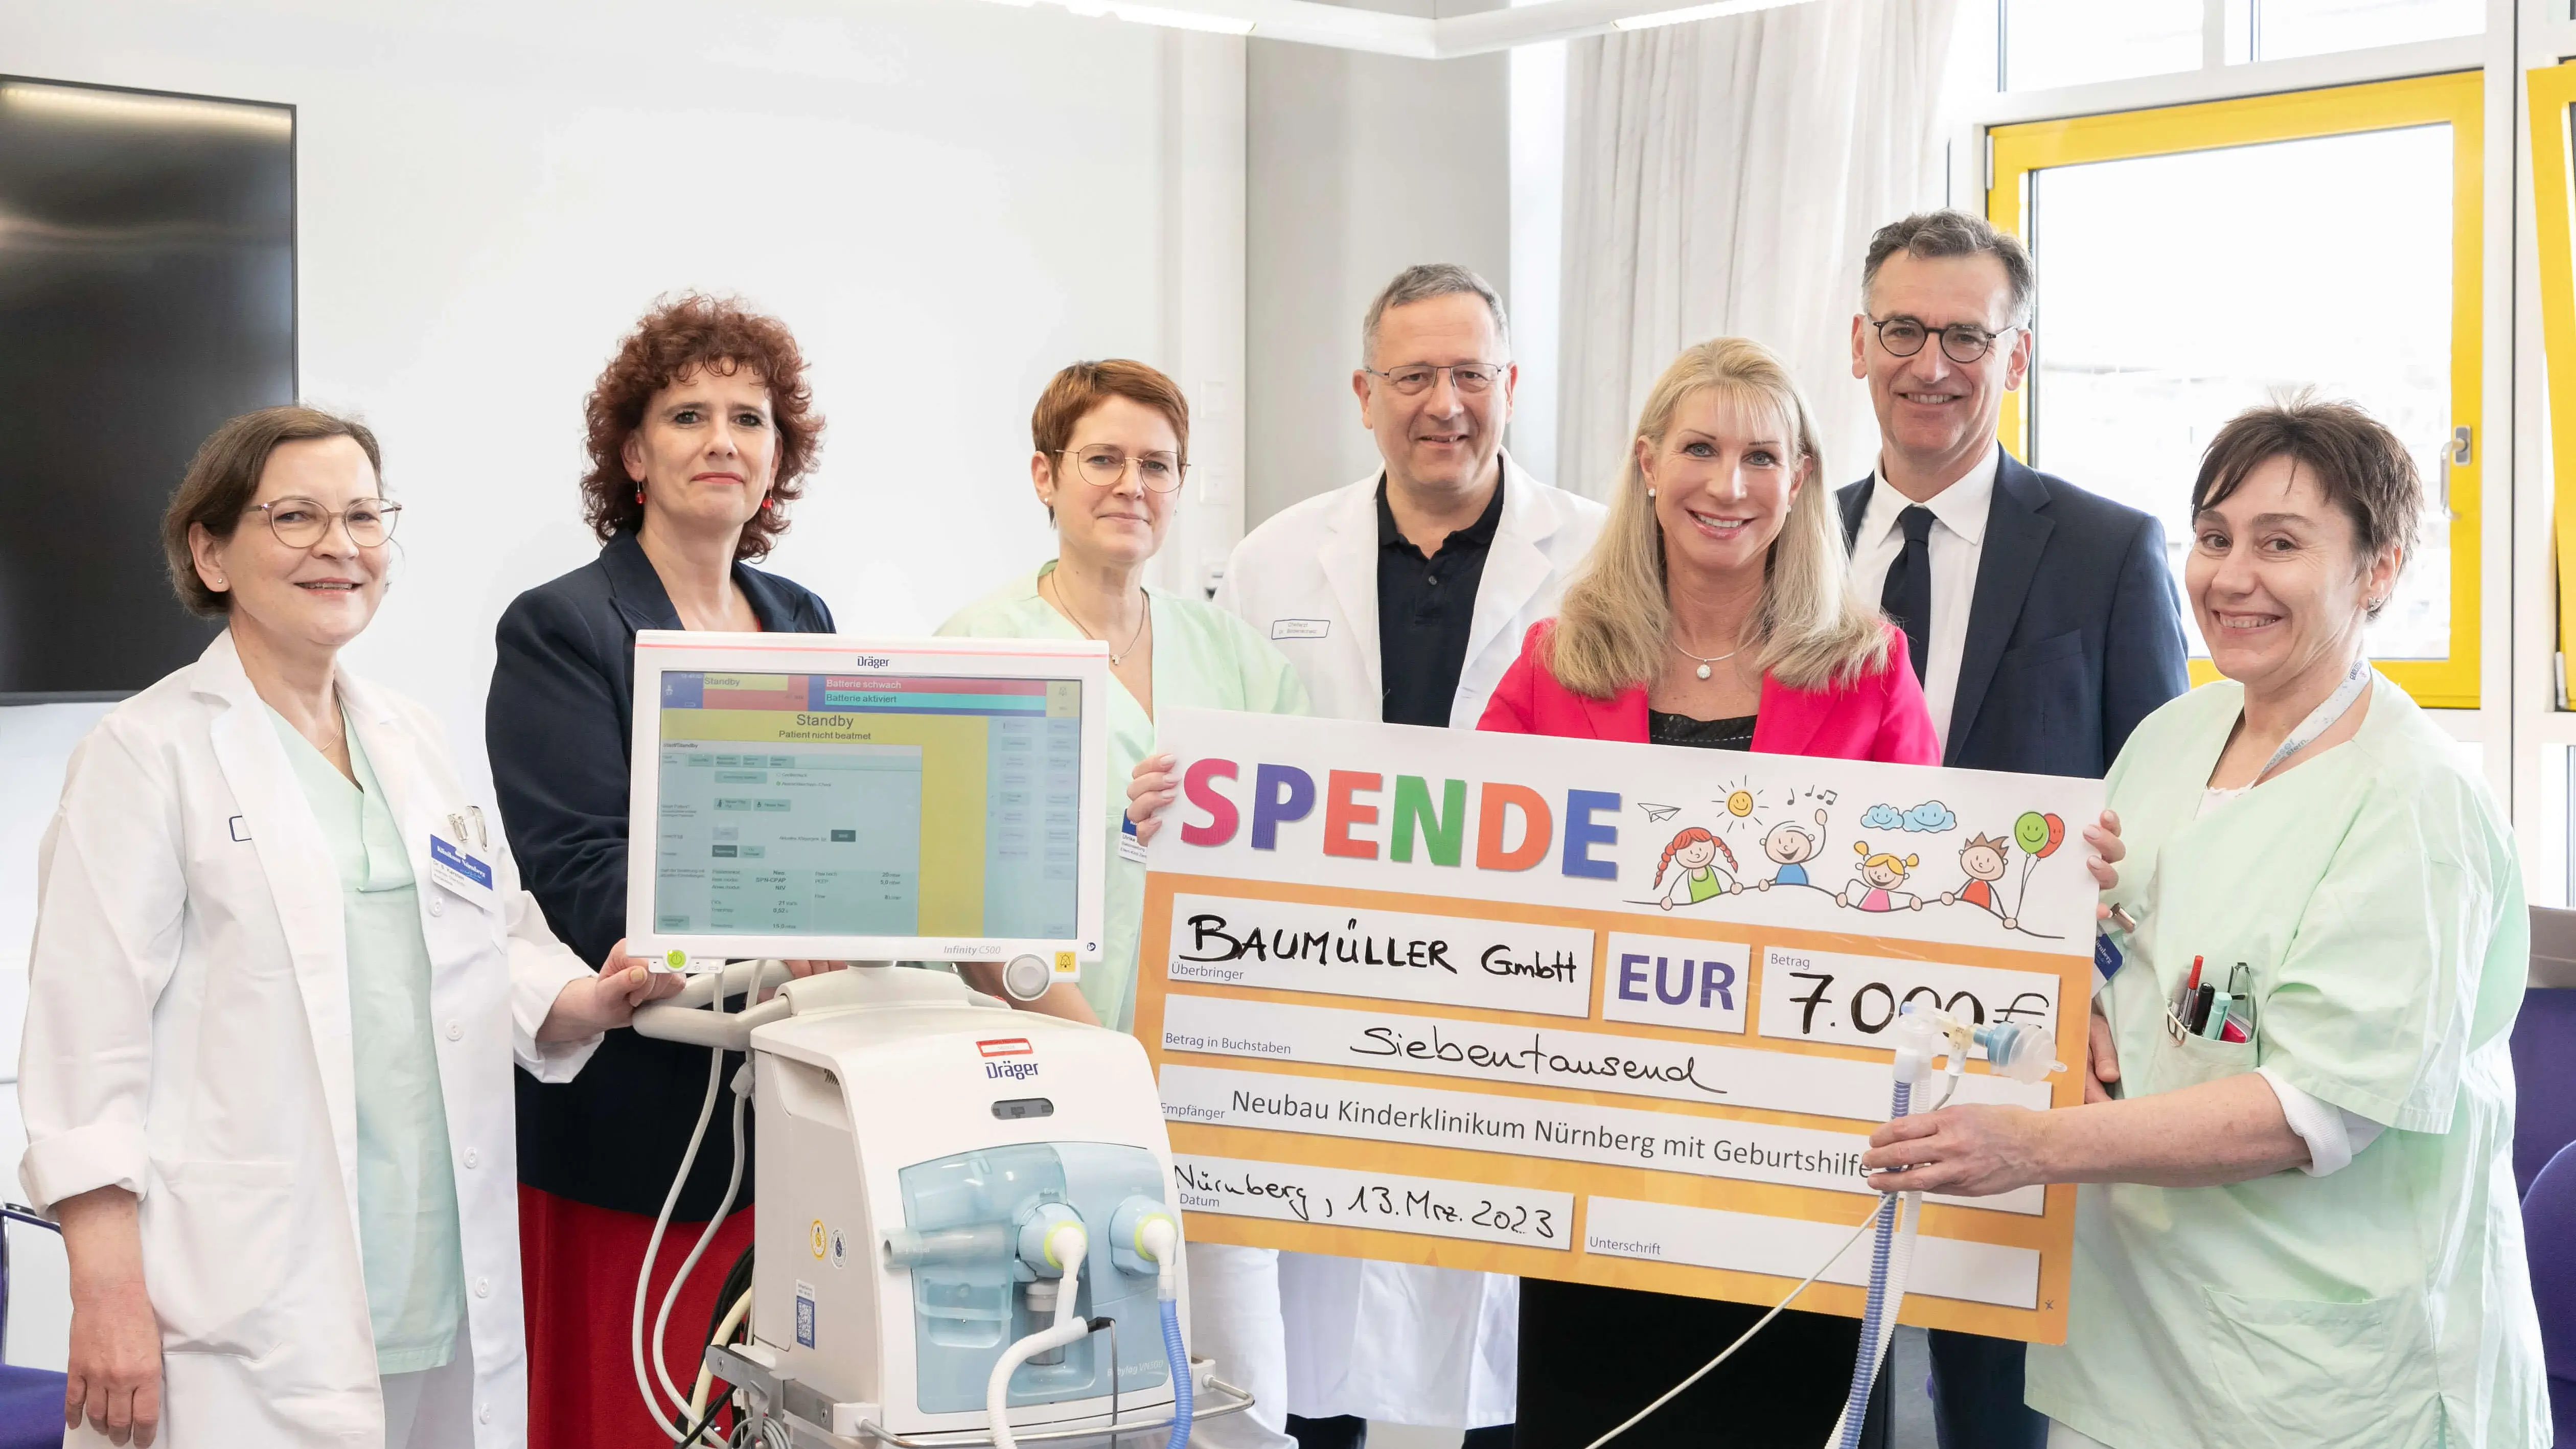 Gruppenfoto mit Schirmherrin Karin Baumüller-Söder, Klinikums-Vorstand Prof. Dr. Jockwig und Mitarbeitenden des Klinikums Nürnberg